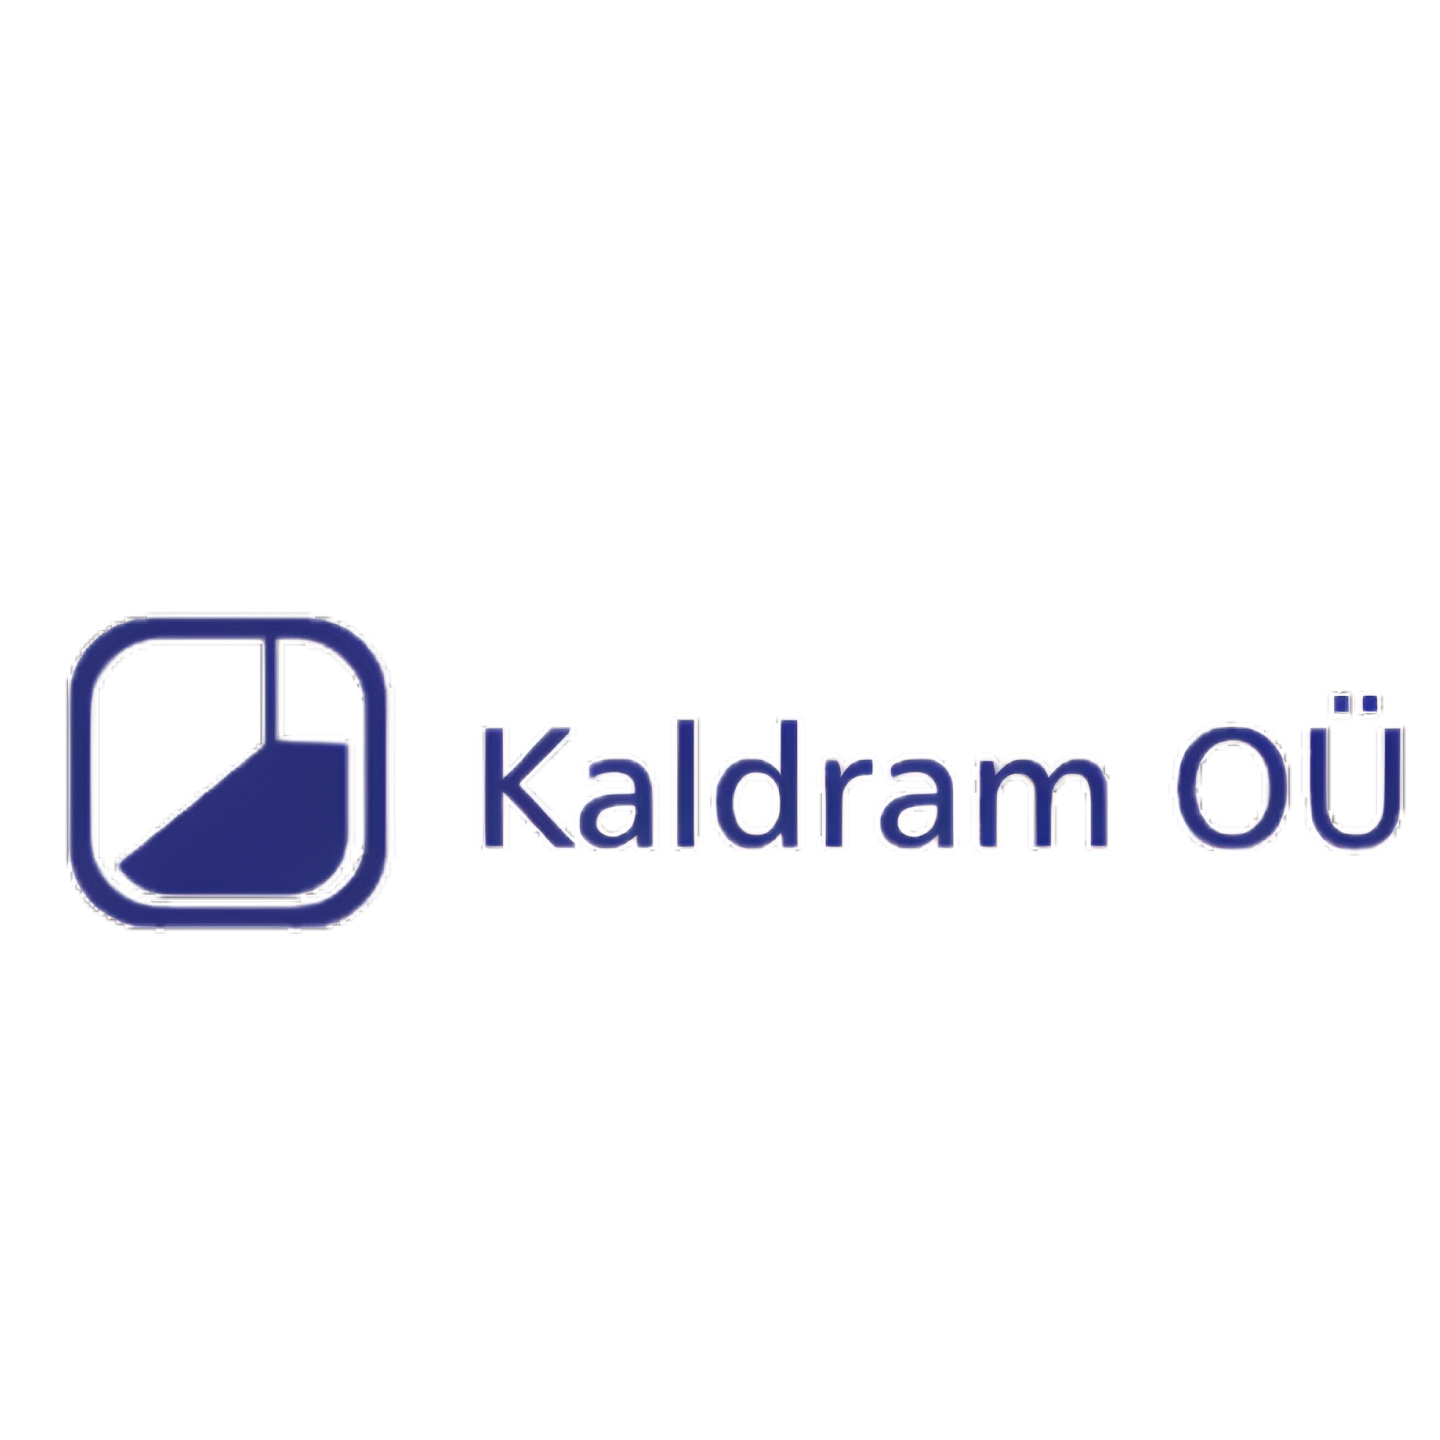 KALDRAM OÜ logo